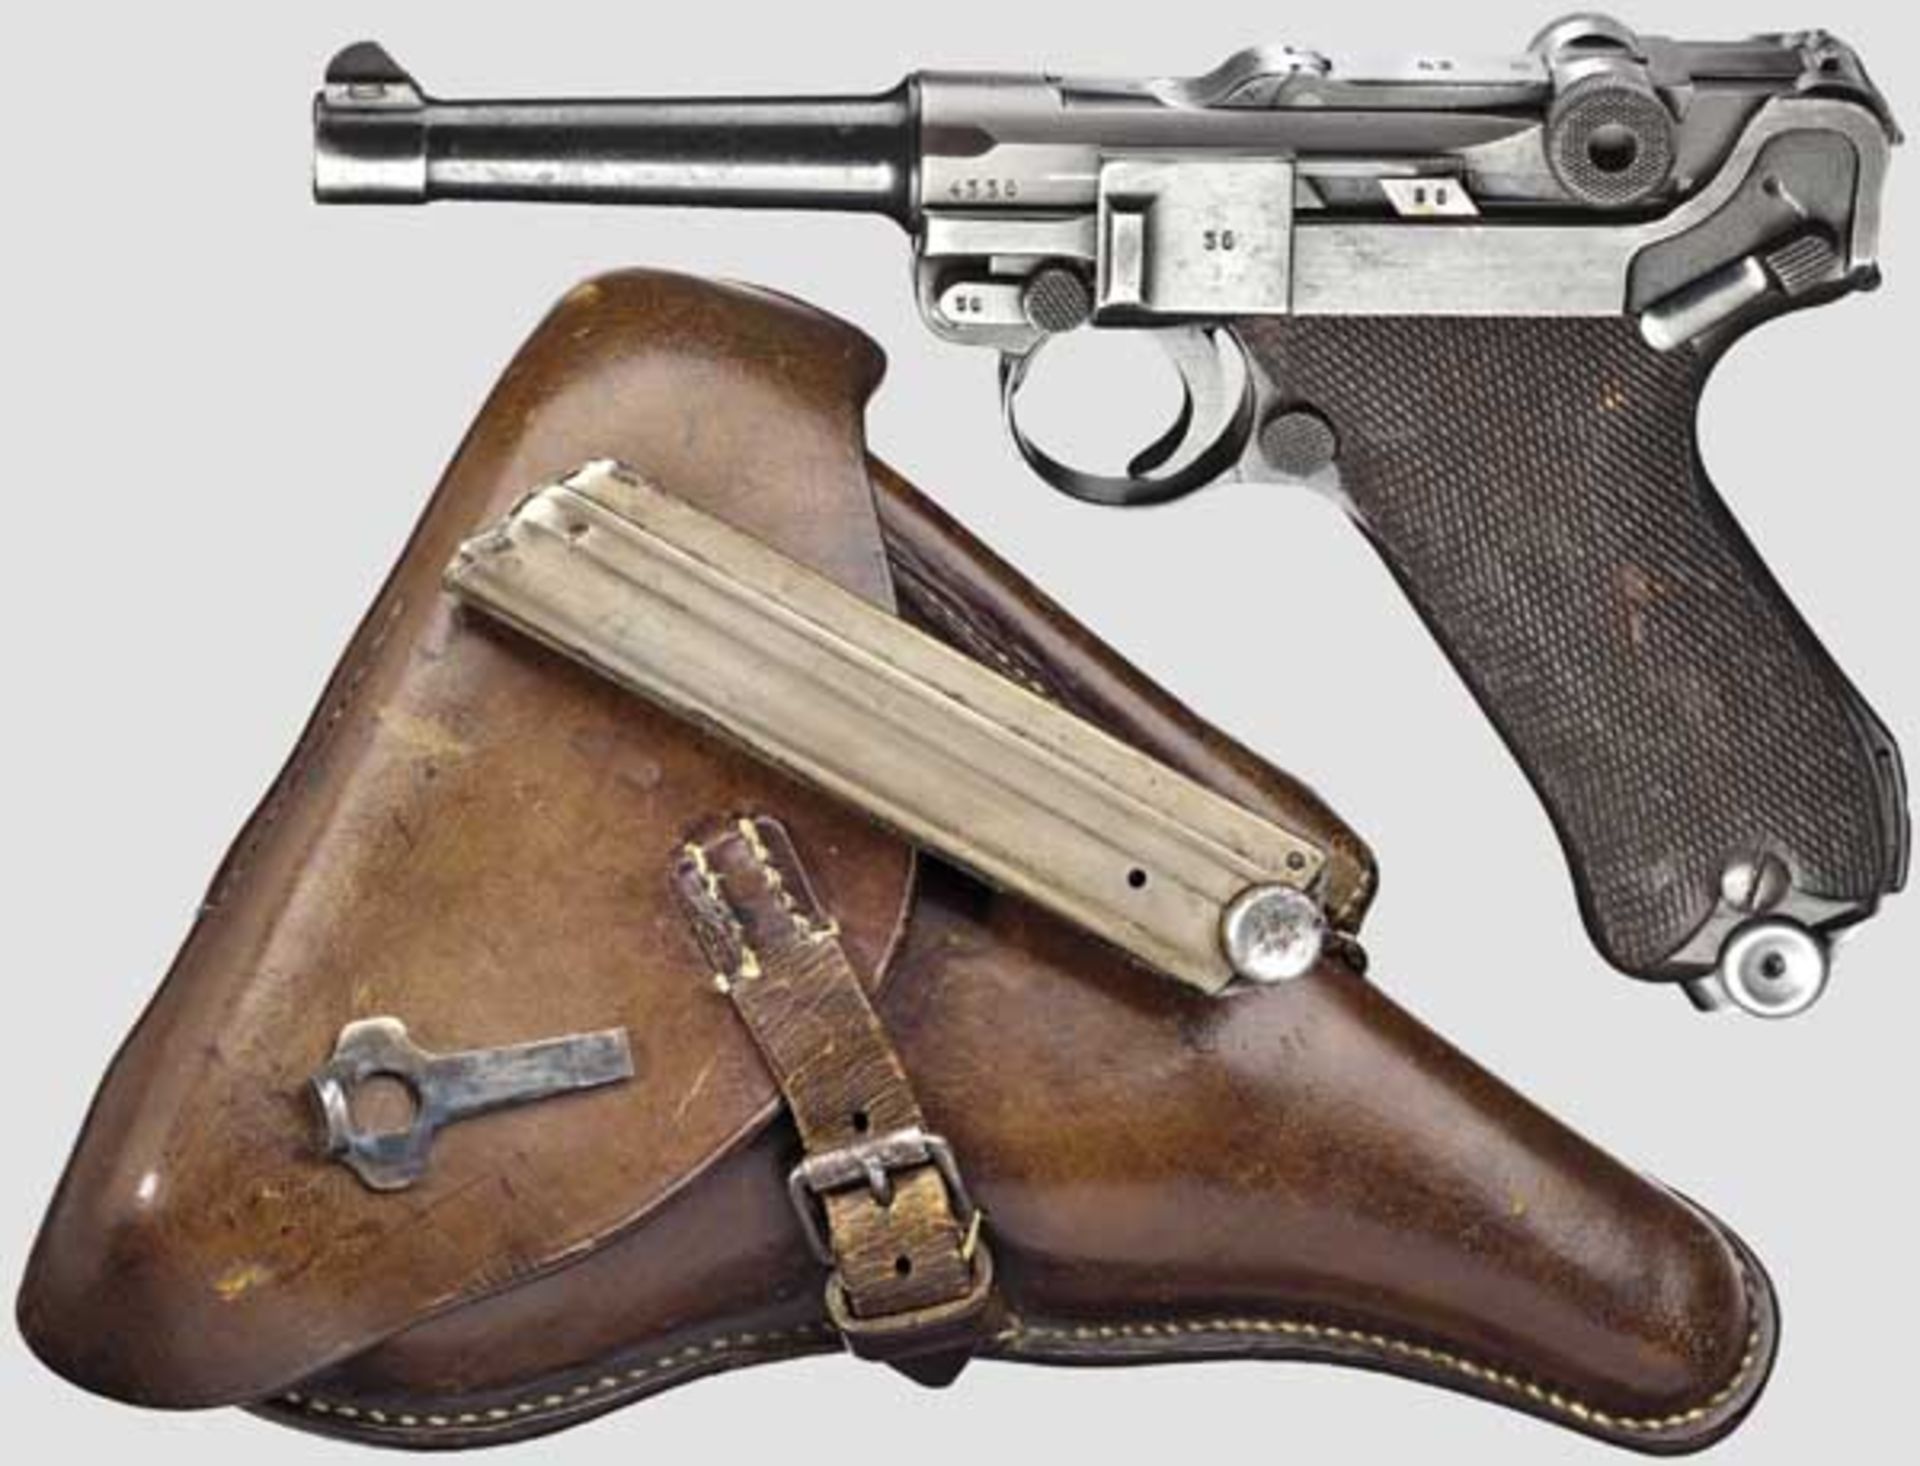 Pistole 08 Mauser, Code "1939 - 42", mit Koffertasche   Kal. 9 mm Para, Nr. 4336v. Nummerngleich